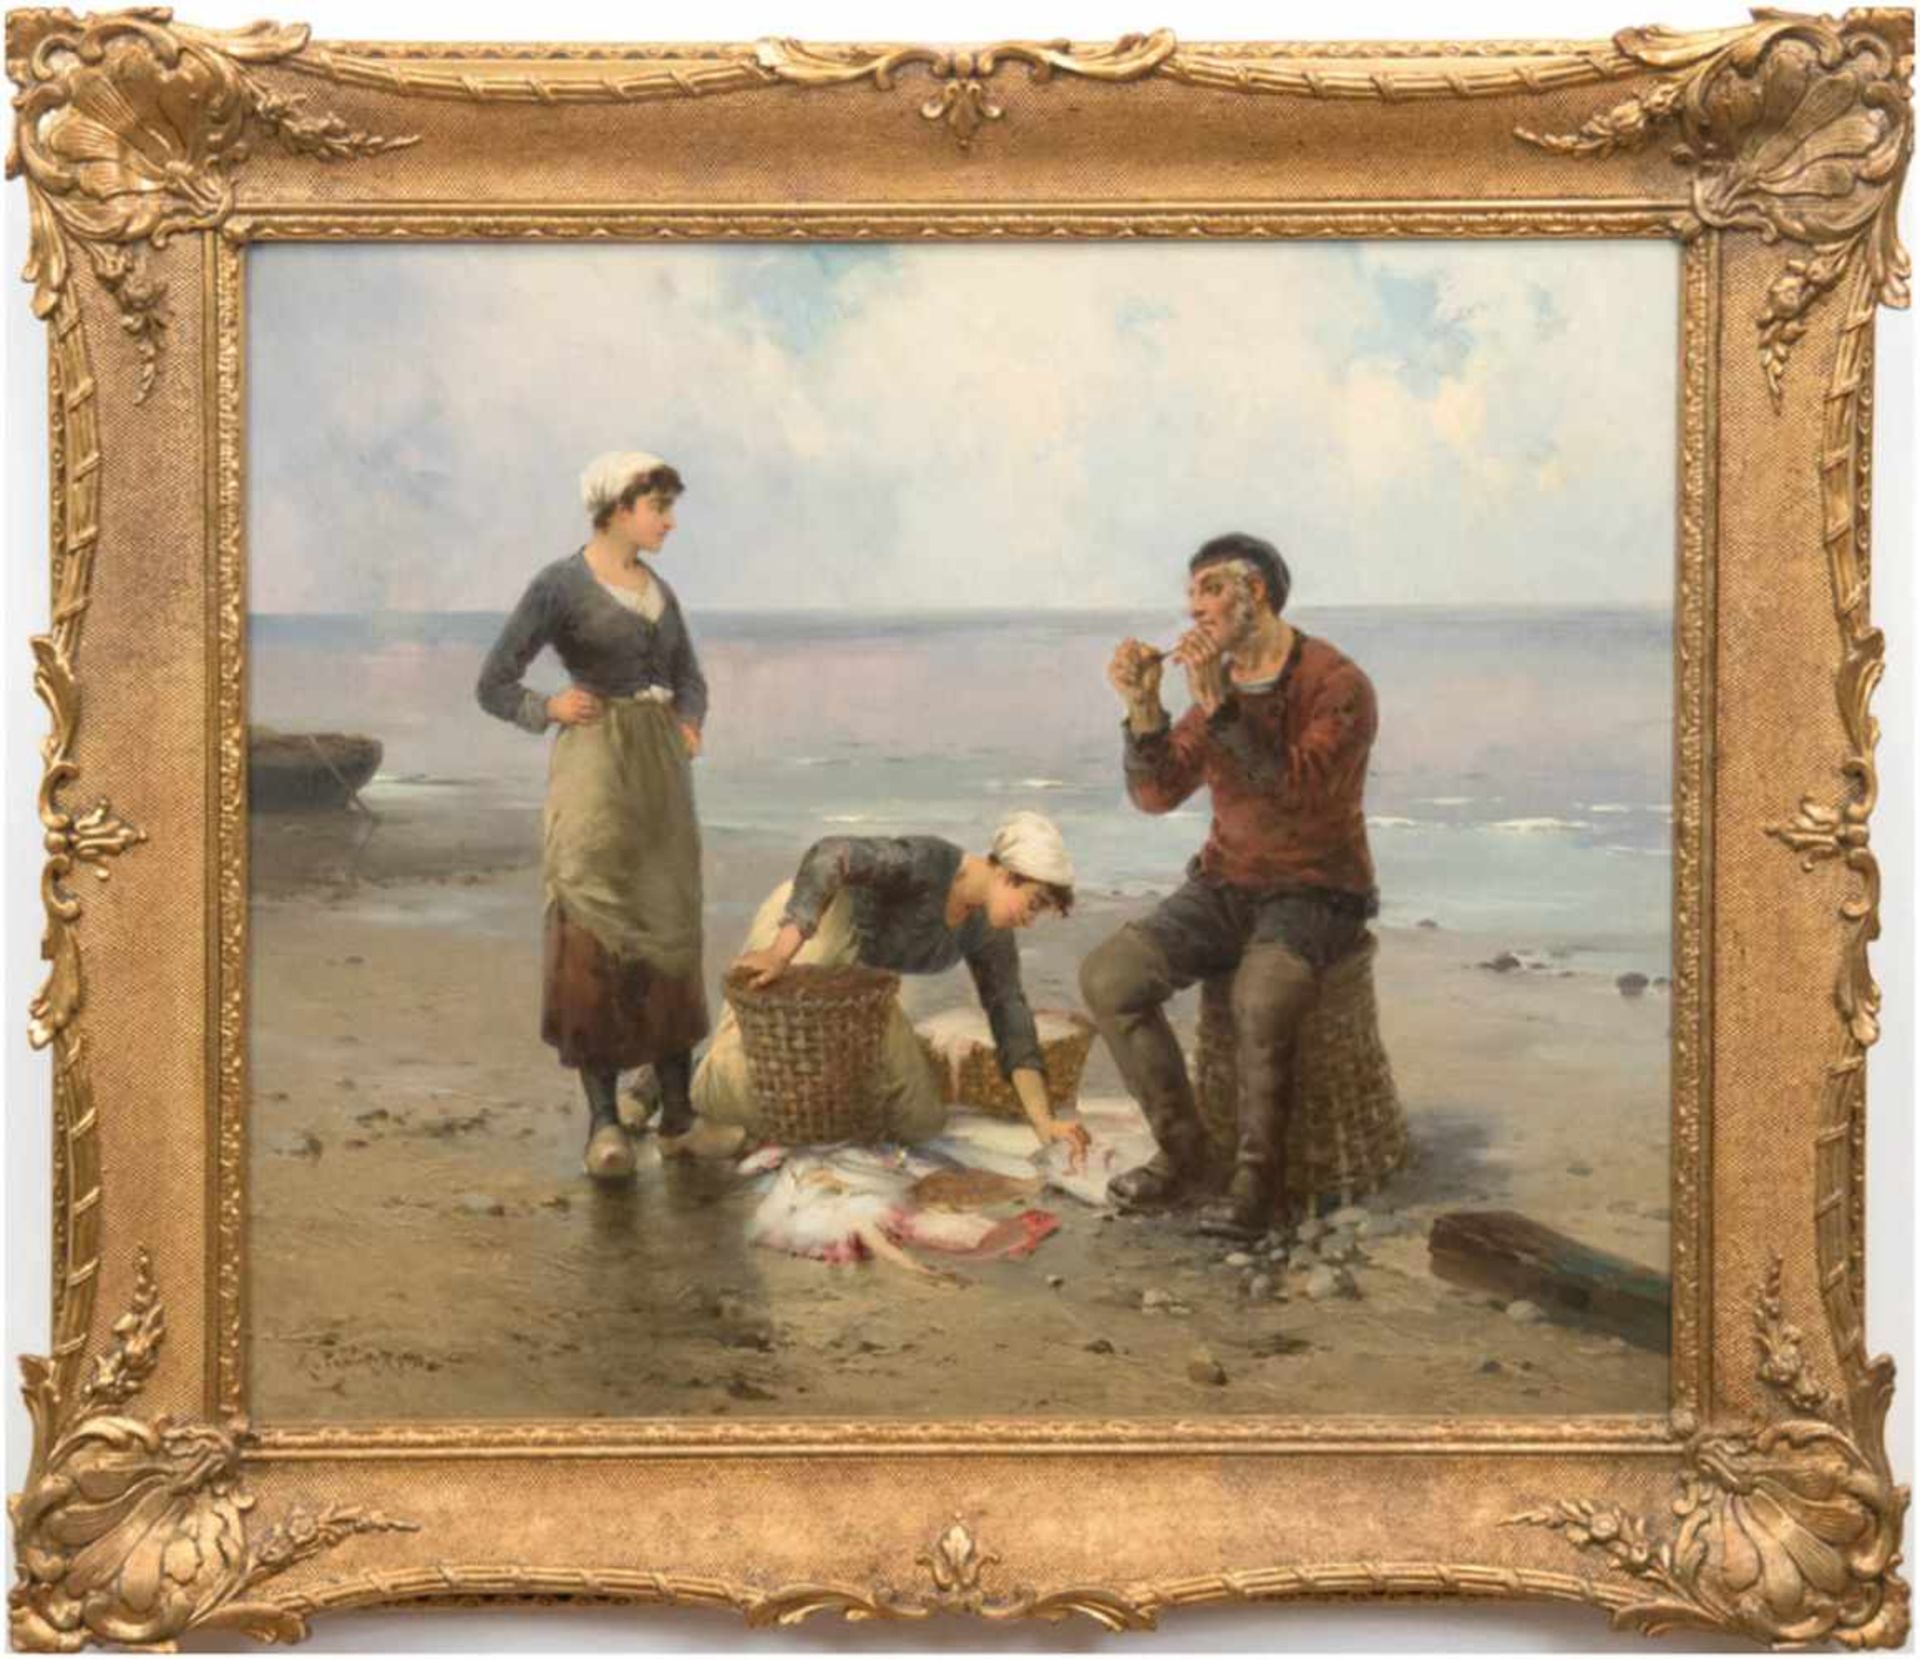 Psalmon, M. (Frankreich Ende 19. Jh.) "Fischersleute mit Fang am Strand", Öl/Lw., signiert und